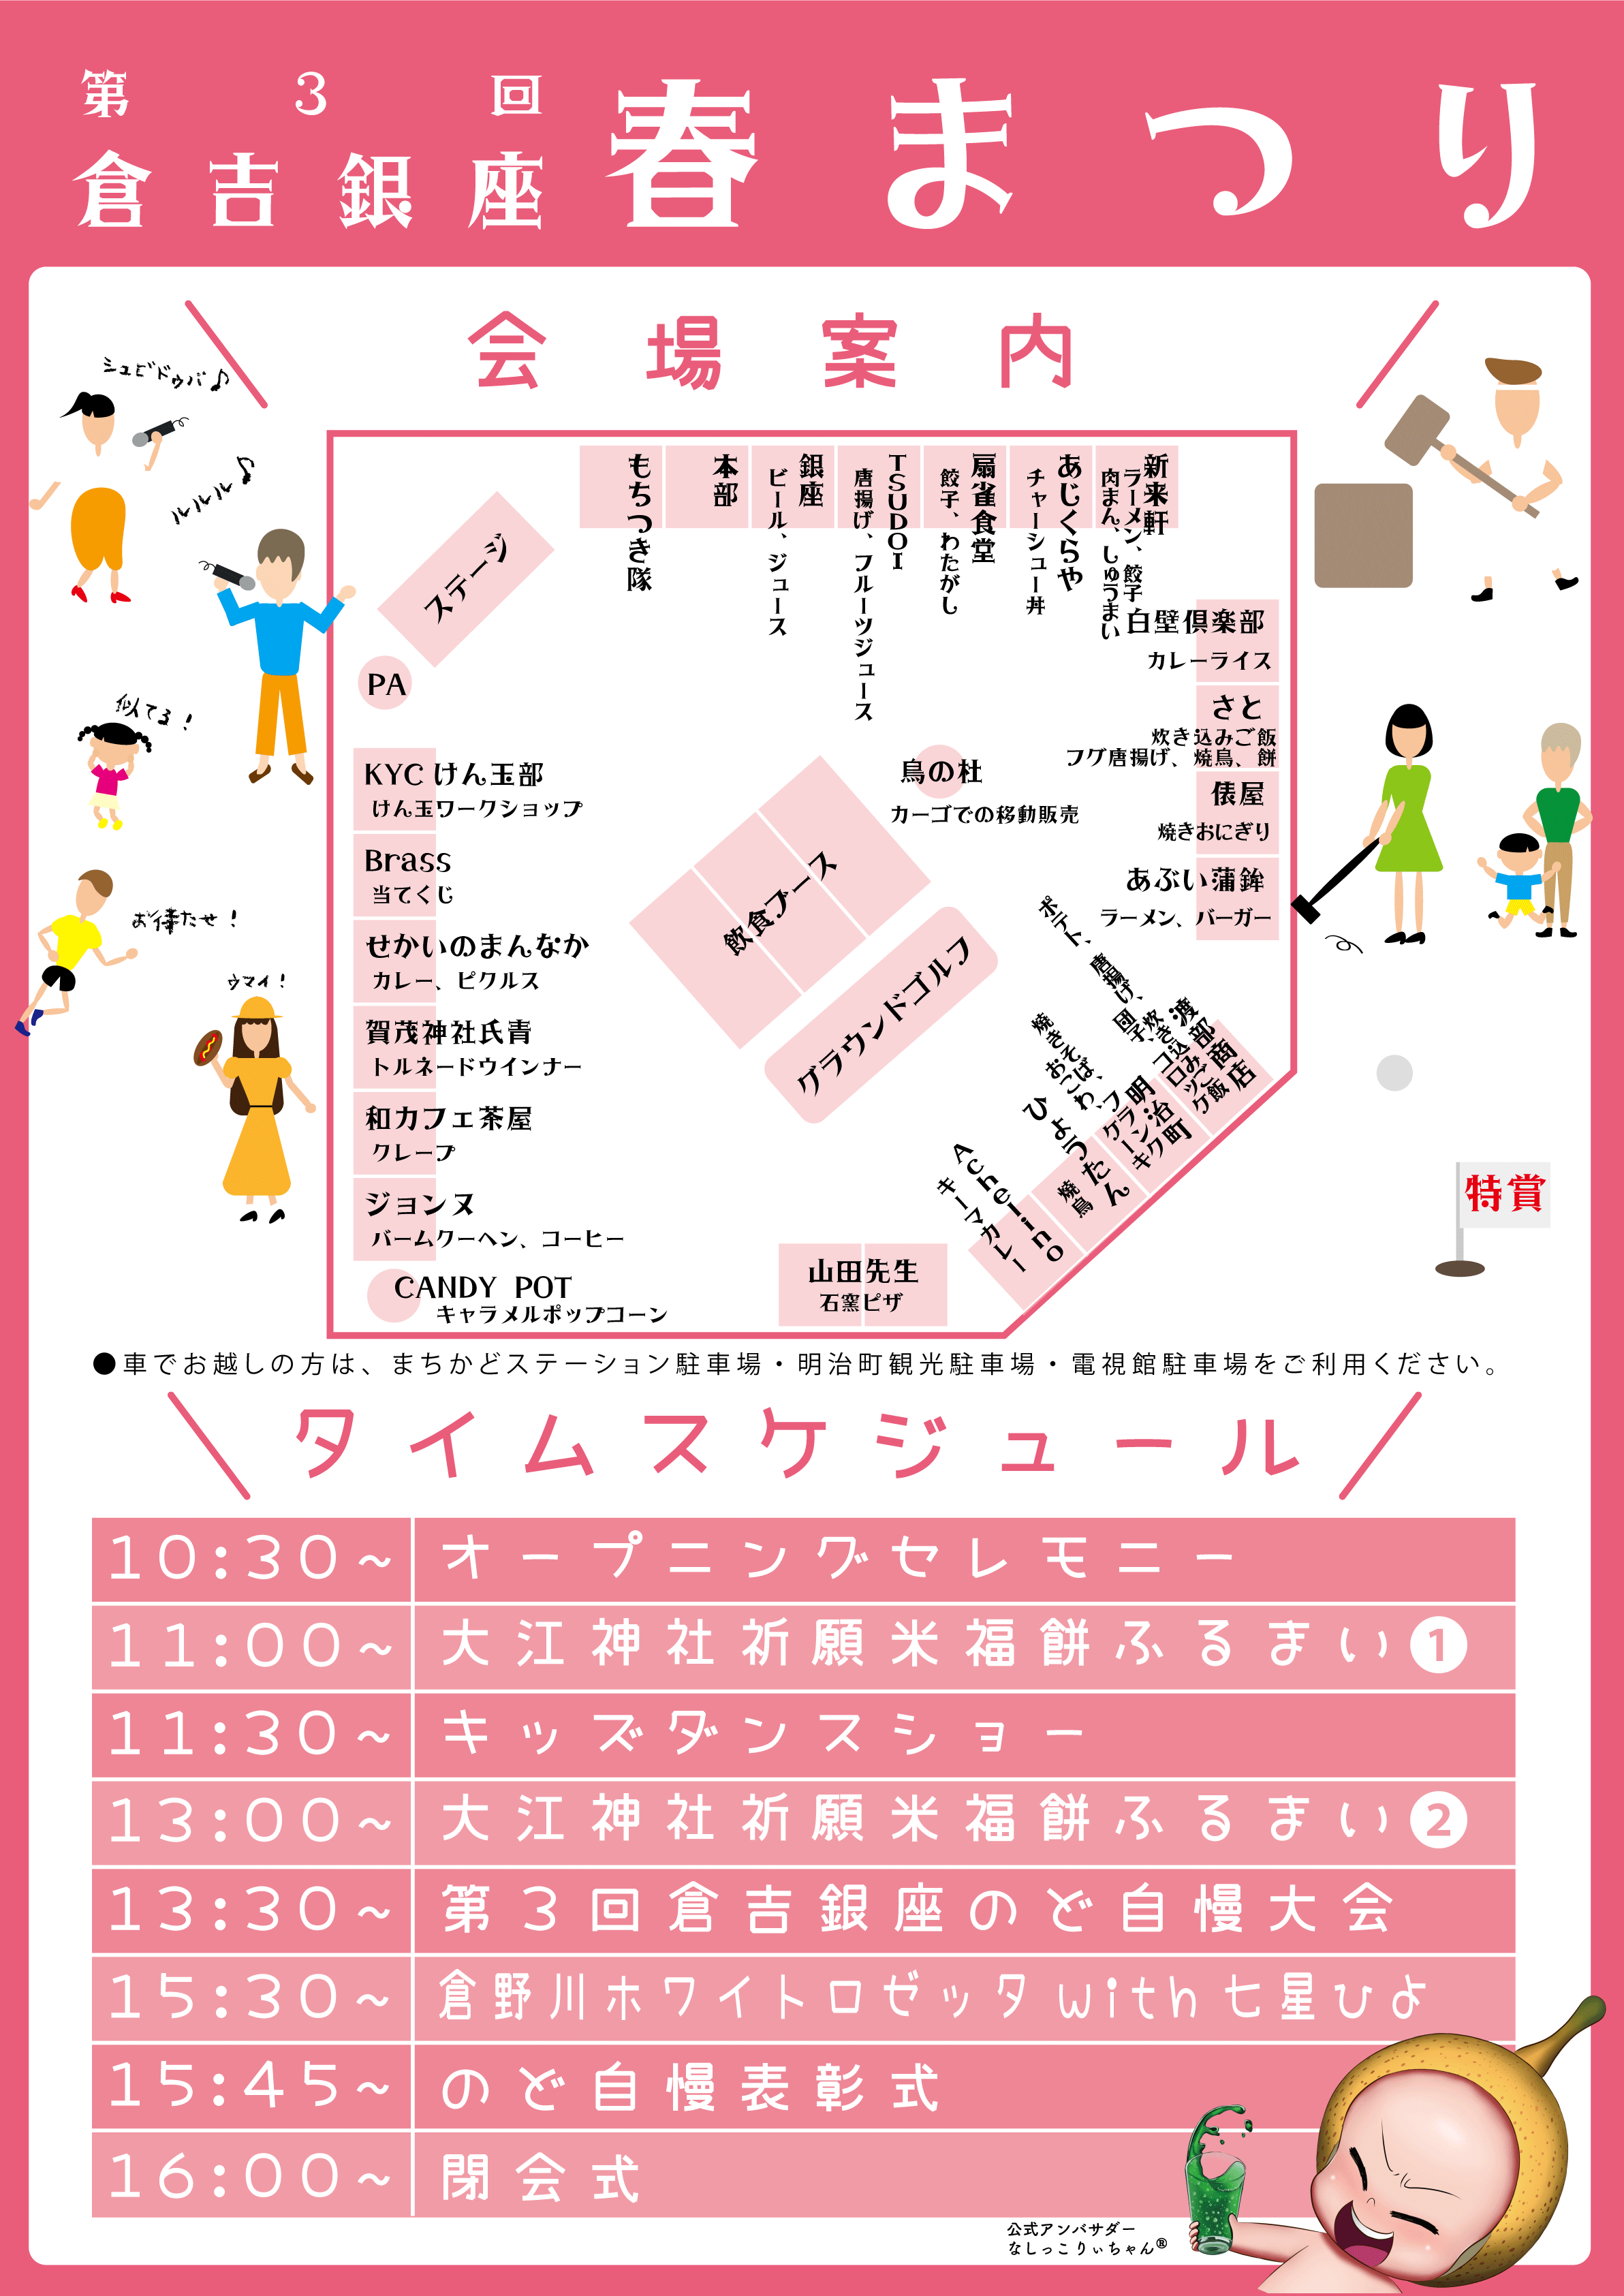 倉吉銀座春まつり会場MAP